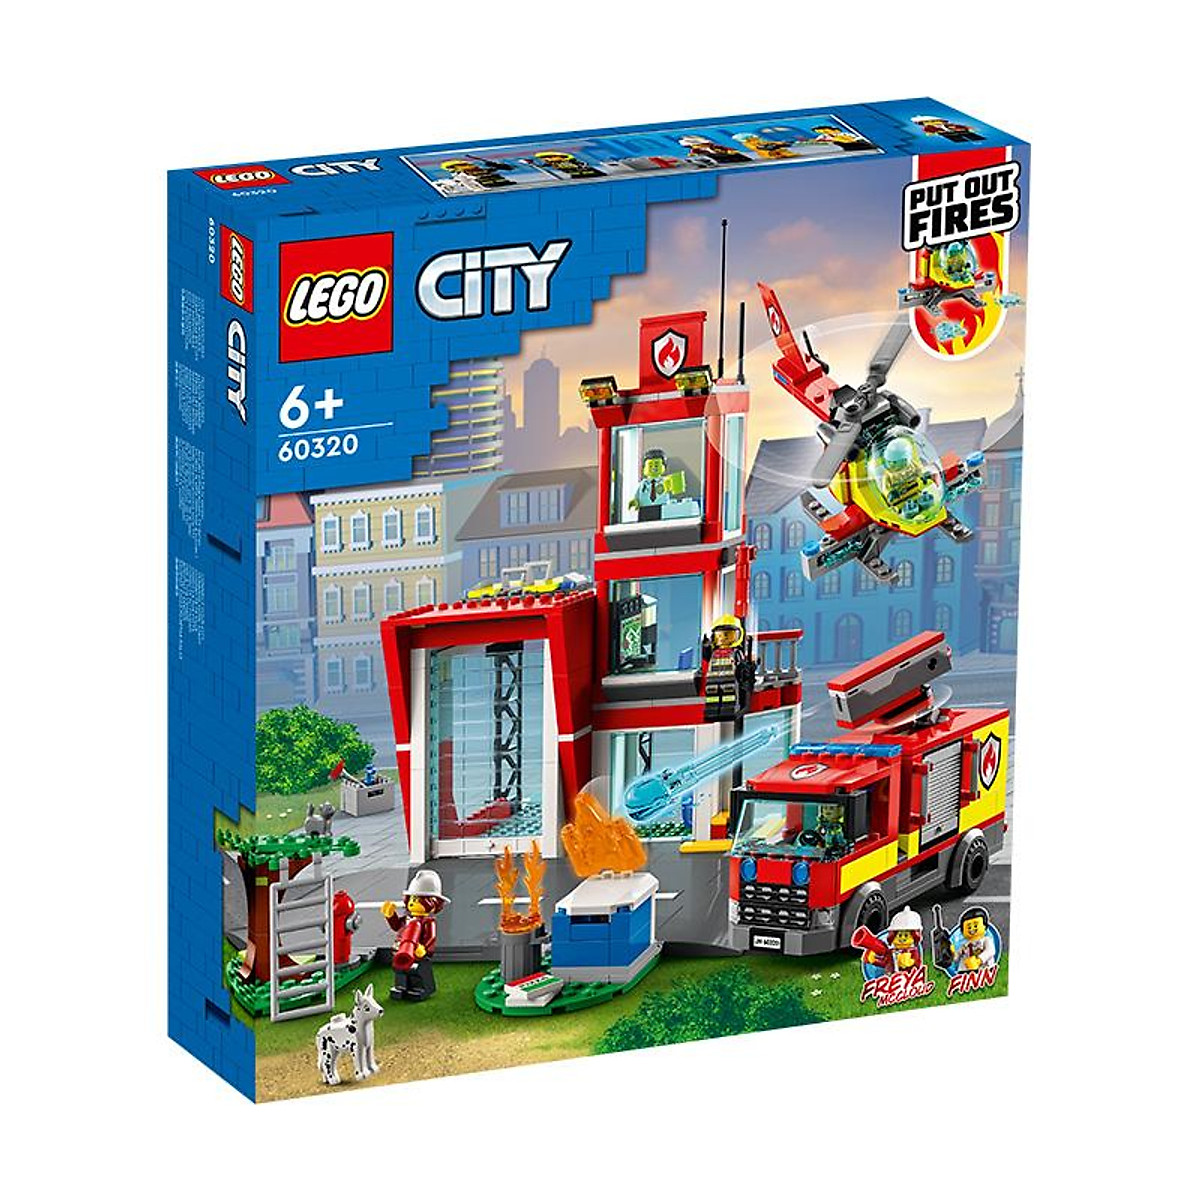 Đồ Chơi LEGO CITY Trạm Cứu Hỏa 60320 - Lắp ghép, Xếp hình